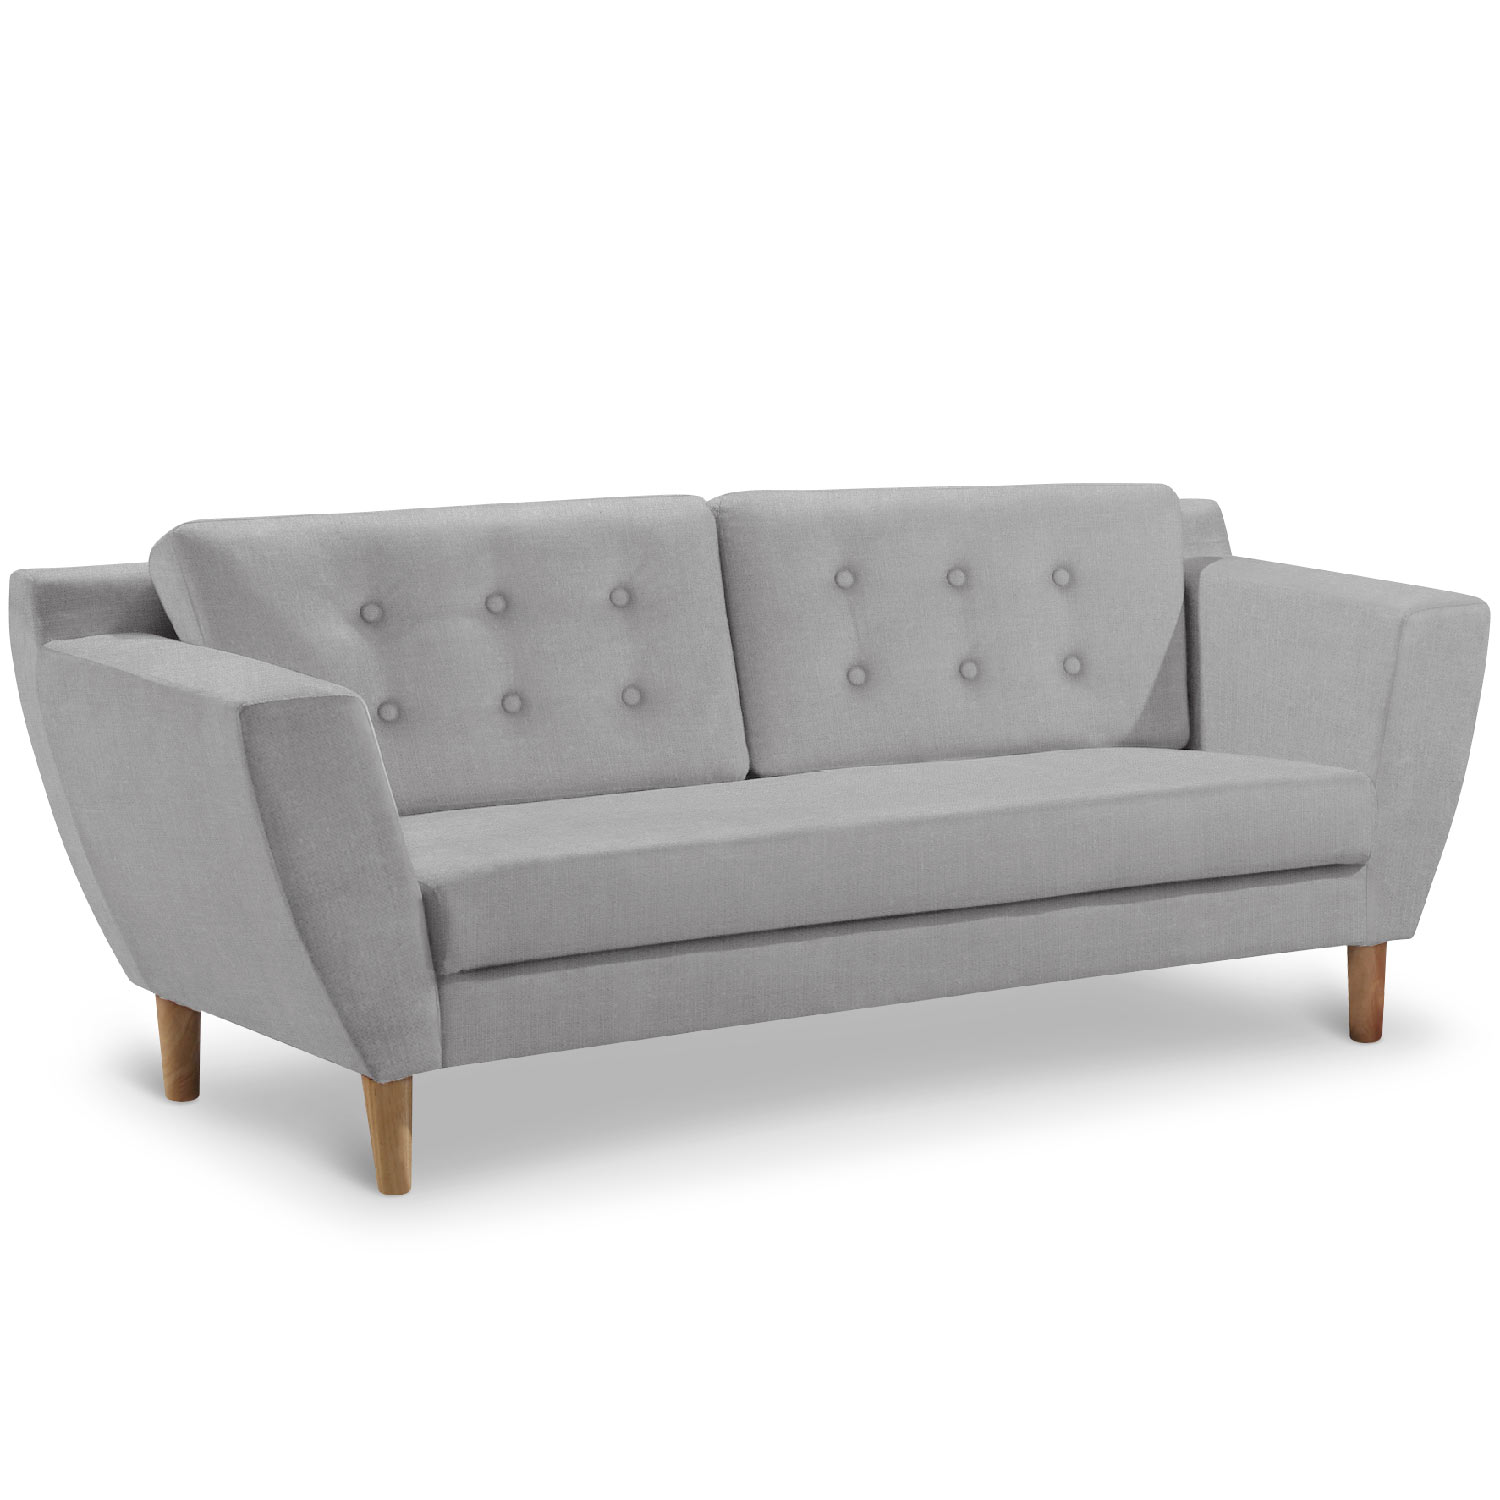 Gibus 3-Sitzer Sofa mit Stoffbezug Grau